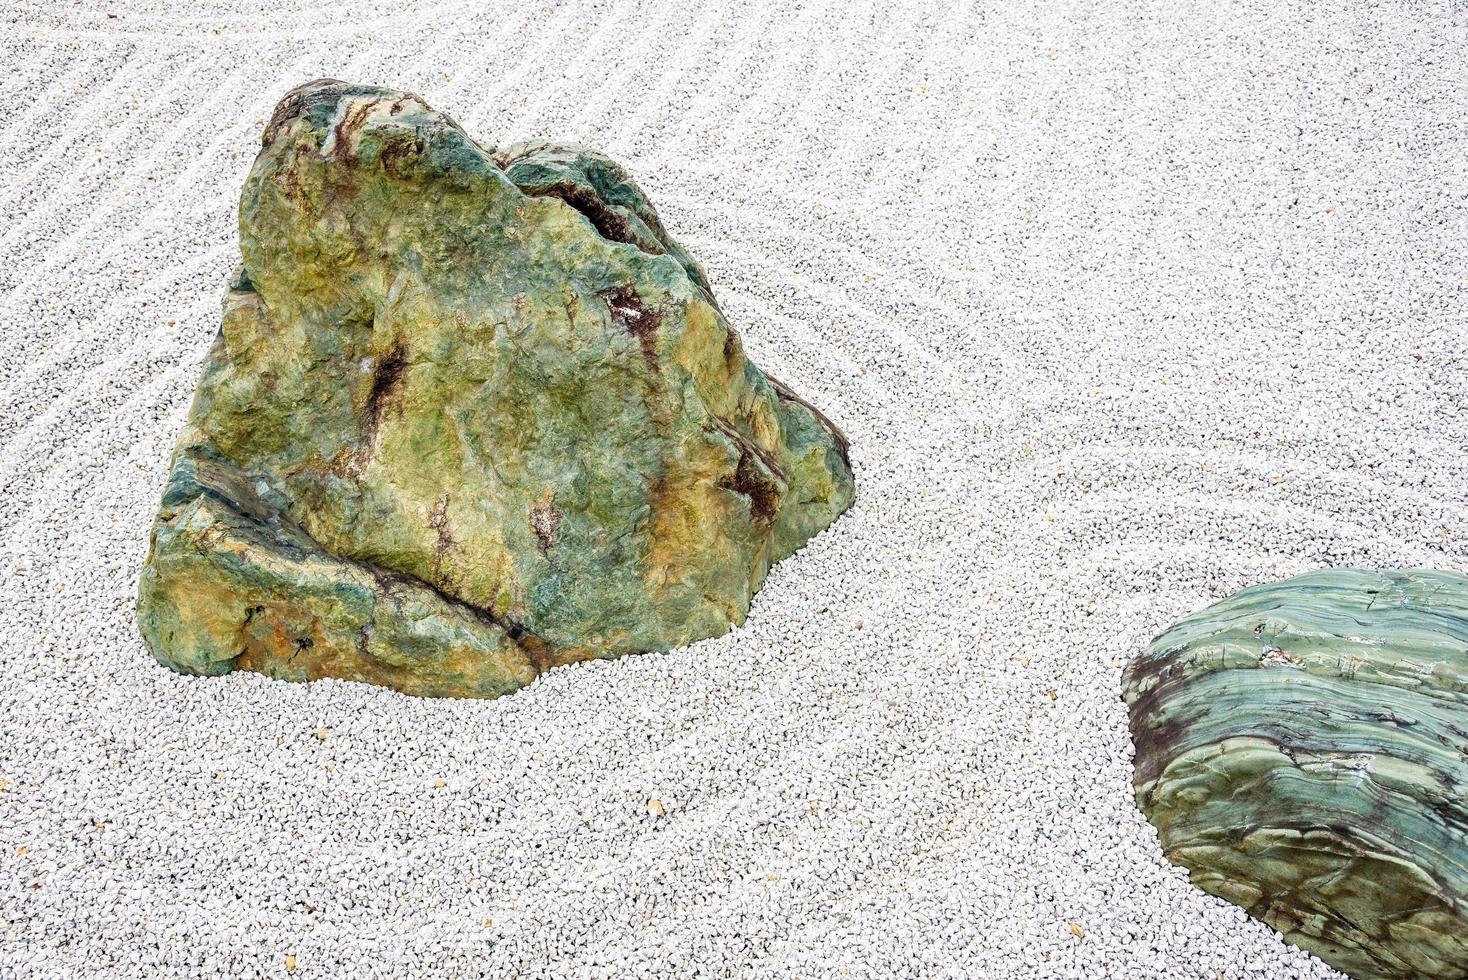 pedra de meditação do jardim zen japonês em linhas de areia para relaxamento, equilíbrio e harmonia espiritualidade ou bem-estar em kyoto, japão. foto